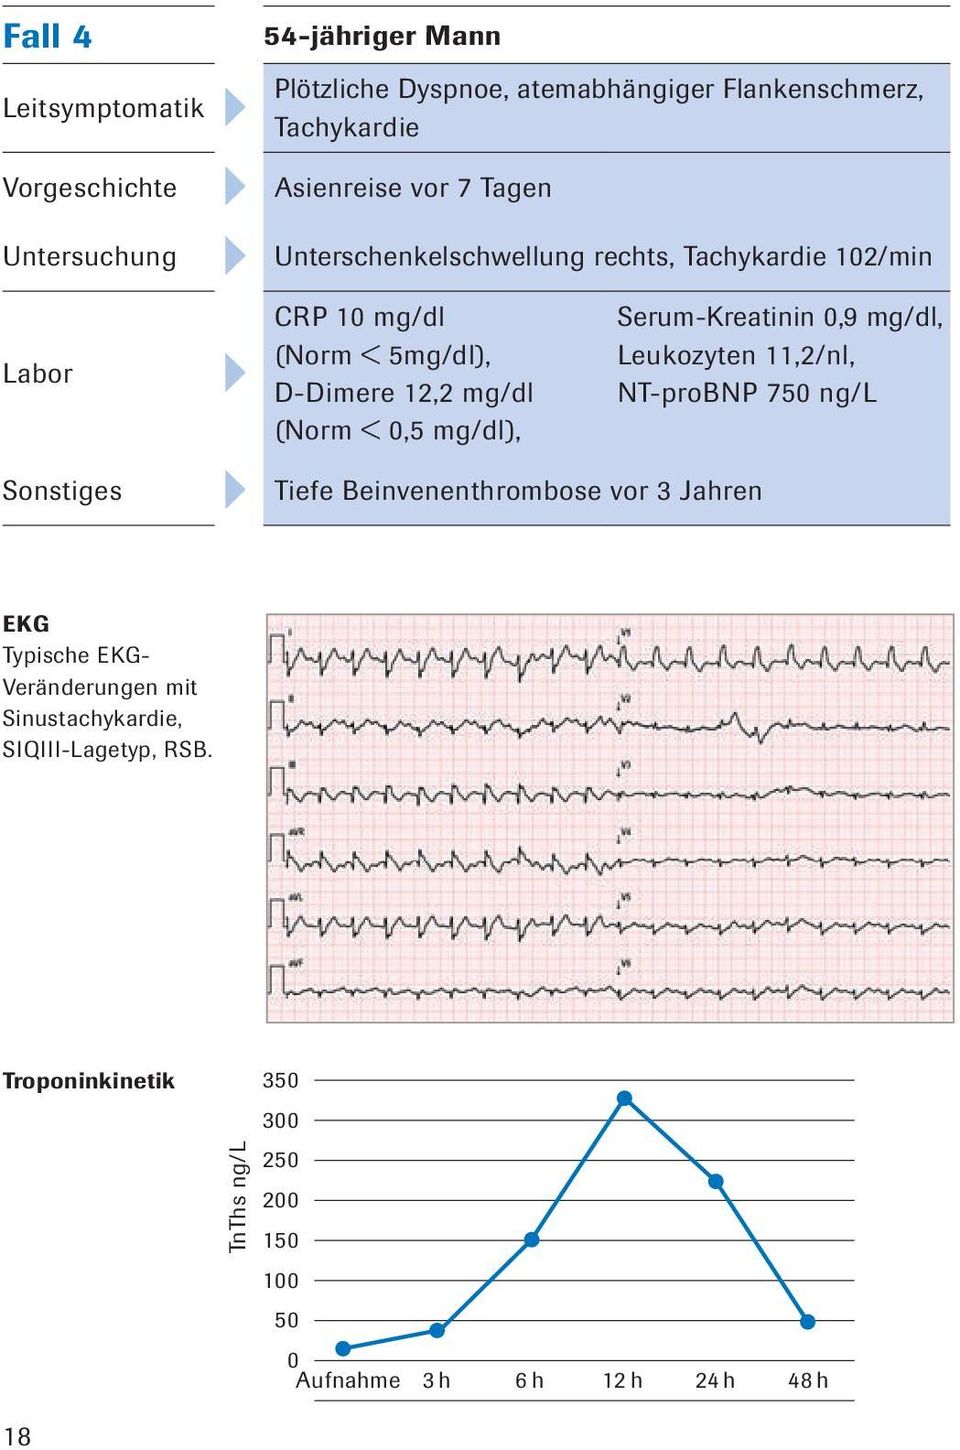 Serum-Kreatinin 0,9 mg/dl, Leukozyten 11,2/nl, NT-proBNP 750 ng/l Sonstiges Tiefe Beinvenenthrombose vor 3 Jahren EKG Typische EKG-